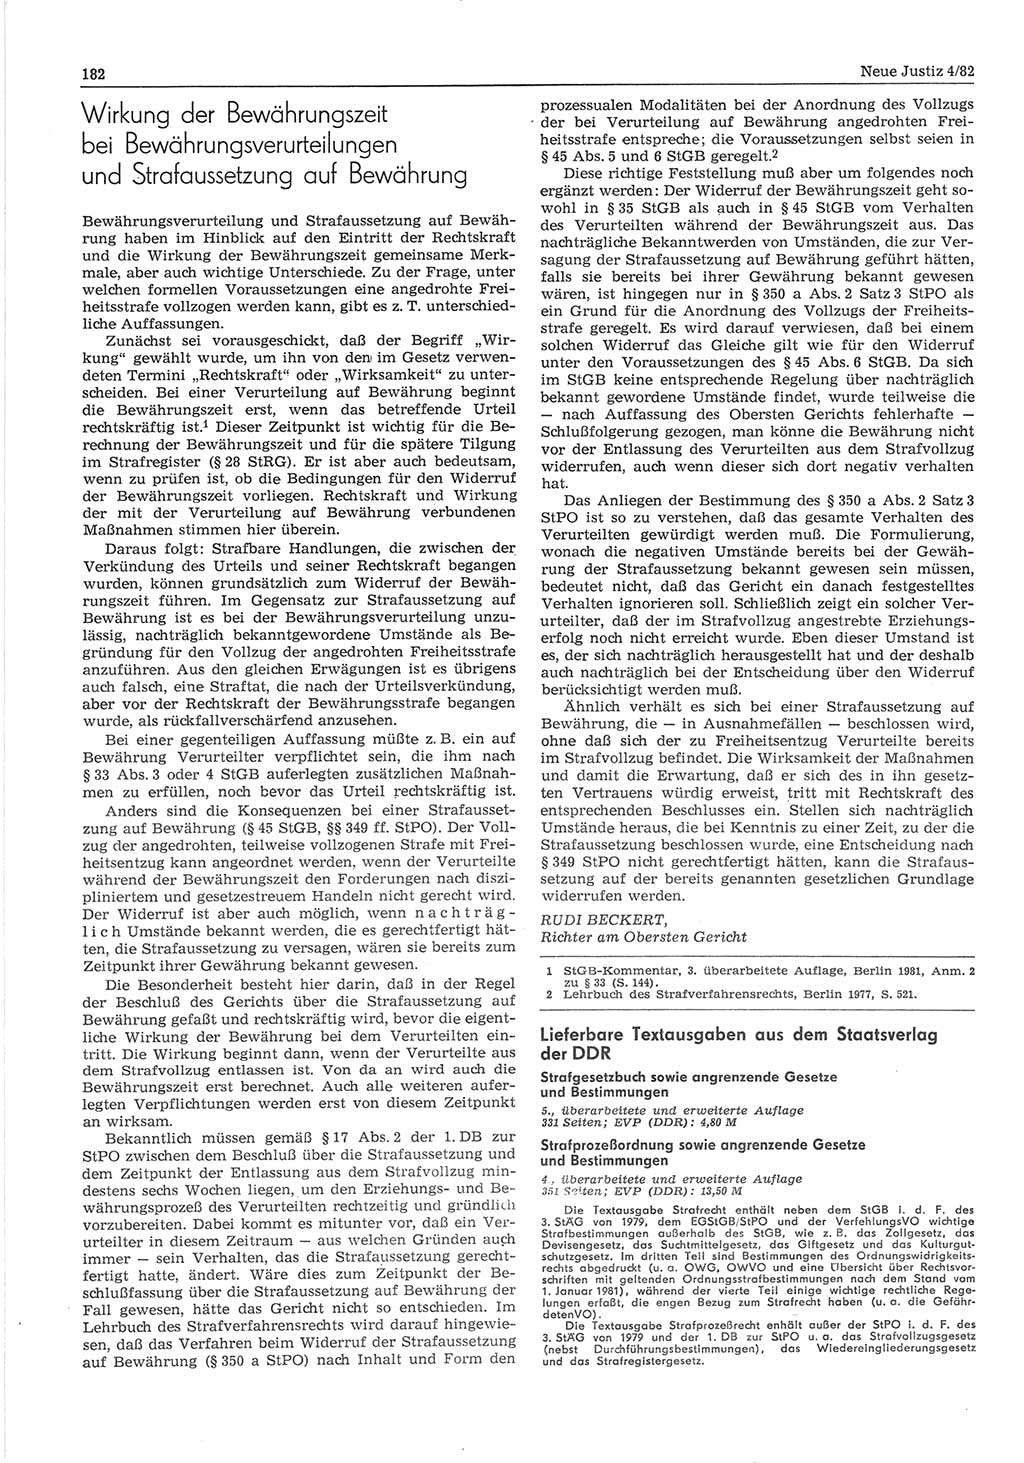 Neue Justiz (NJ), Zeitschrift für sozialistisches Recht und Gesetzlichkeit [Deutsche Demokratische Republik (DDR)], 36. Jahrgang 1982, Seite 182 (NJ DDR 1982, S. 182)